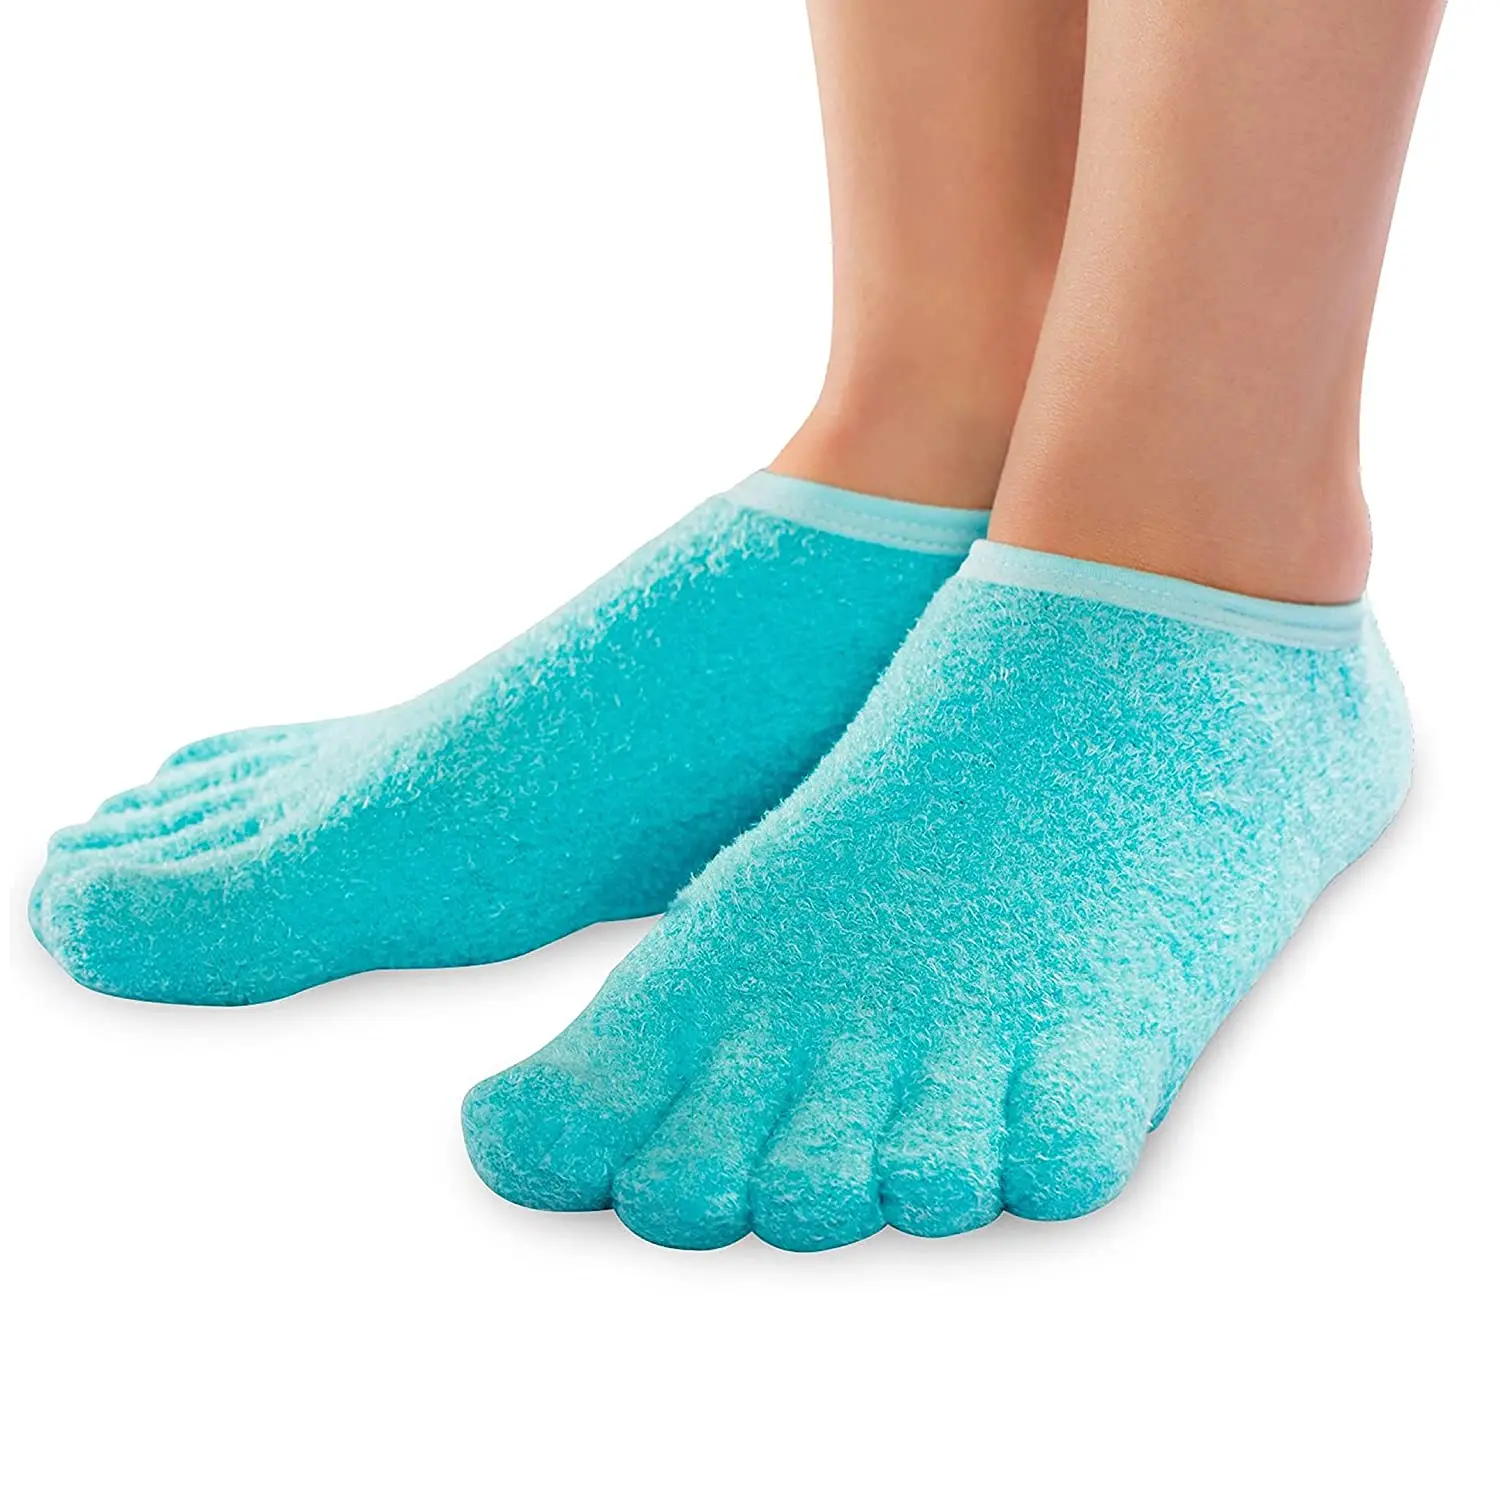 

Moisturize Soften Repair Cracked Skin Moisturizing Treatment Full Gel Jojoba Oil Vitamin E Toe Gel Spa Socks